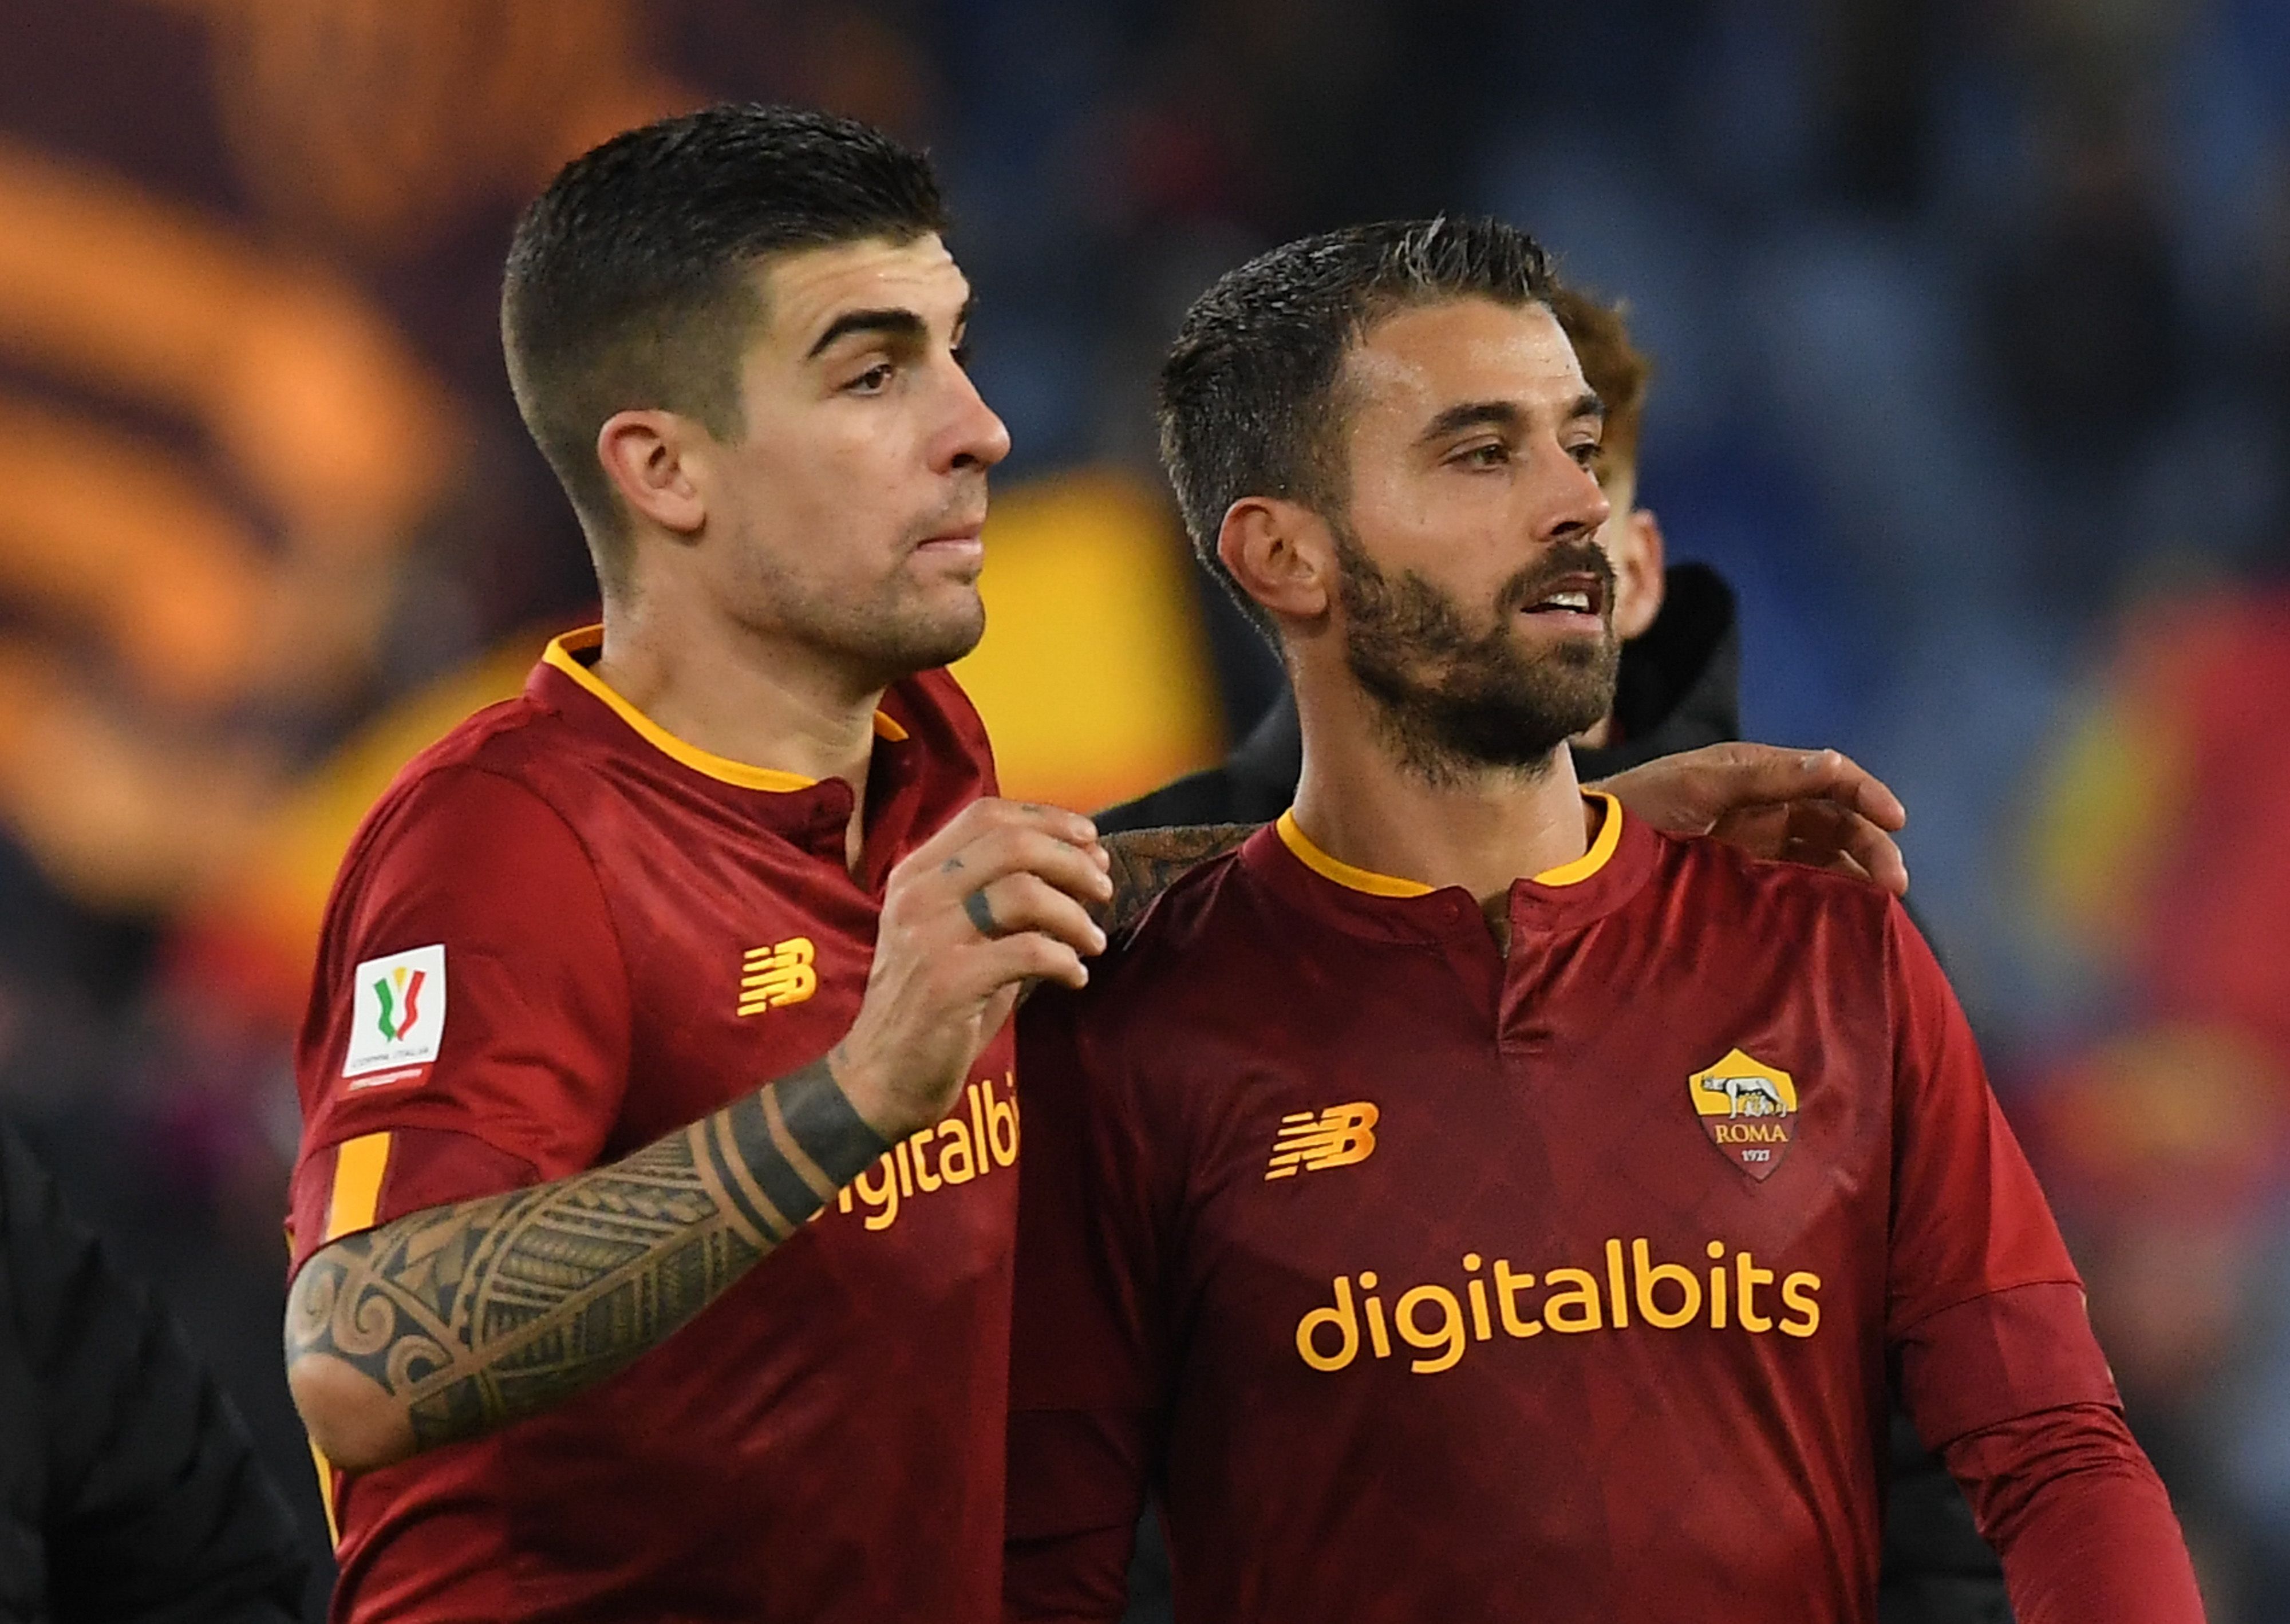 Mancini e Spinazzola in campo con la maglia della Roma